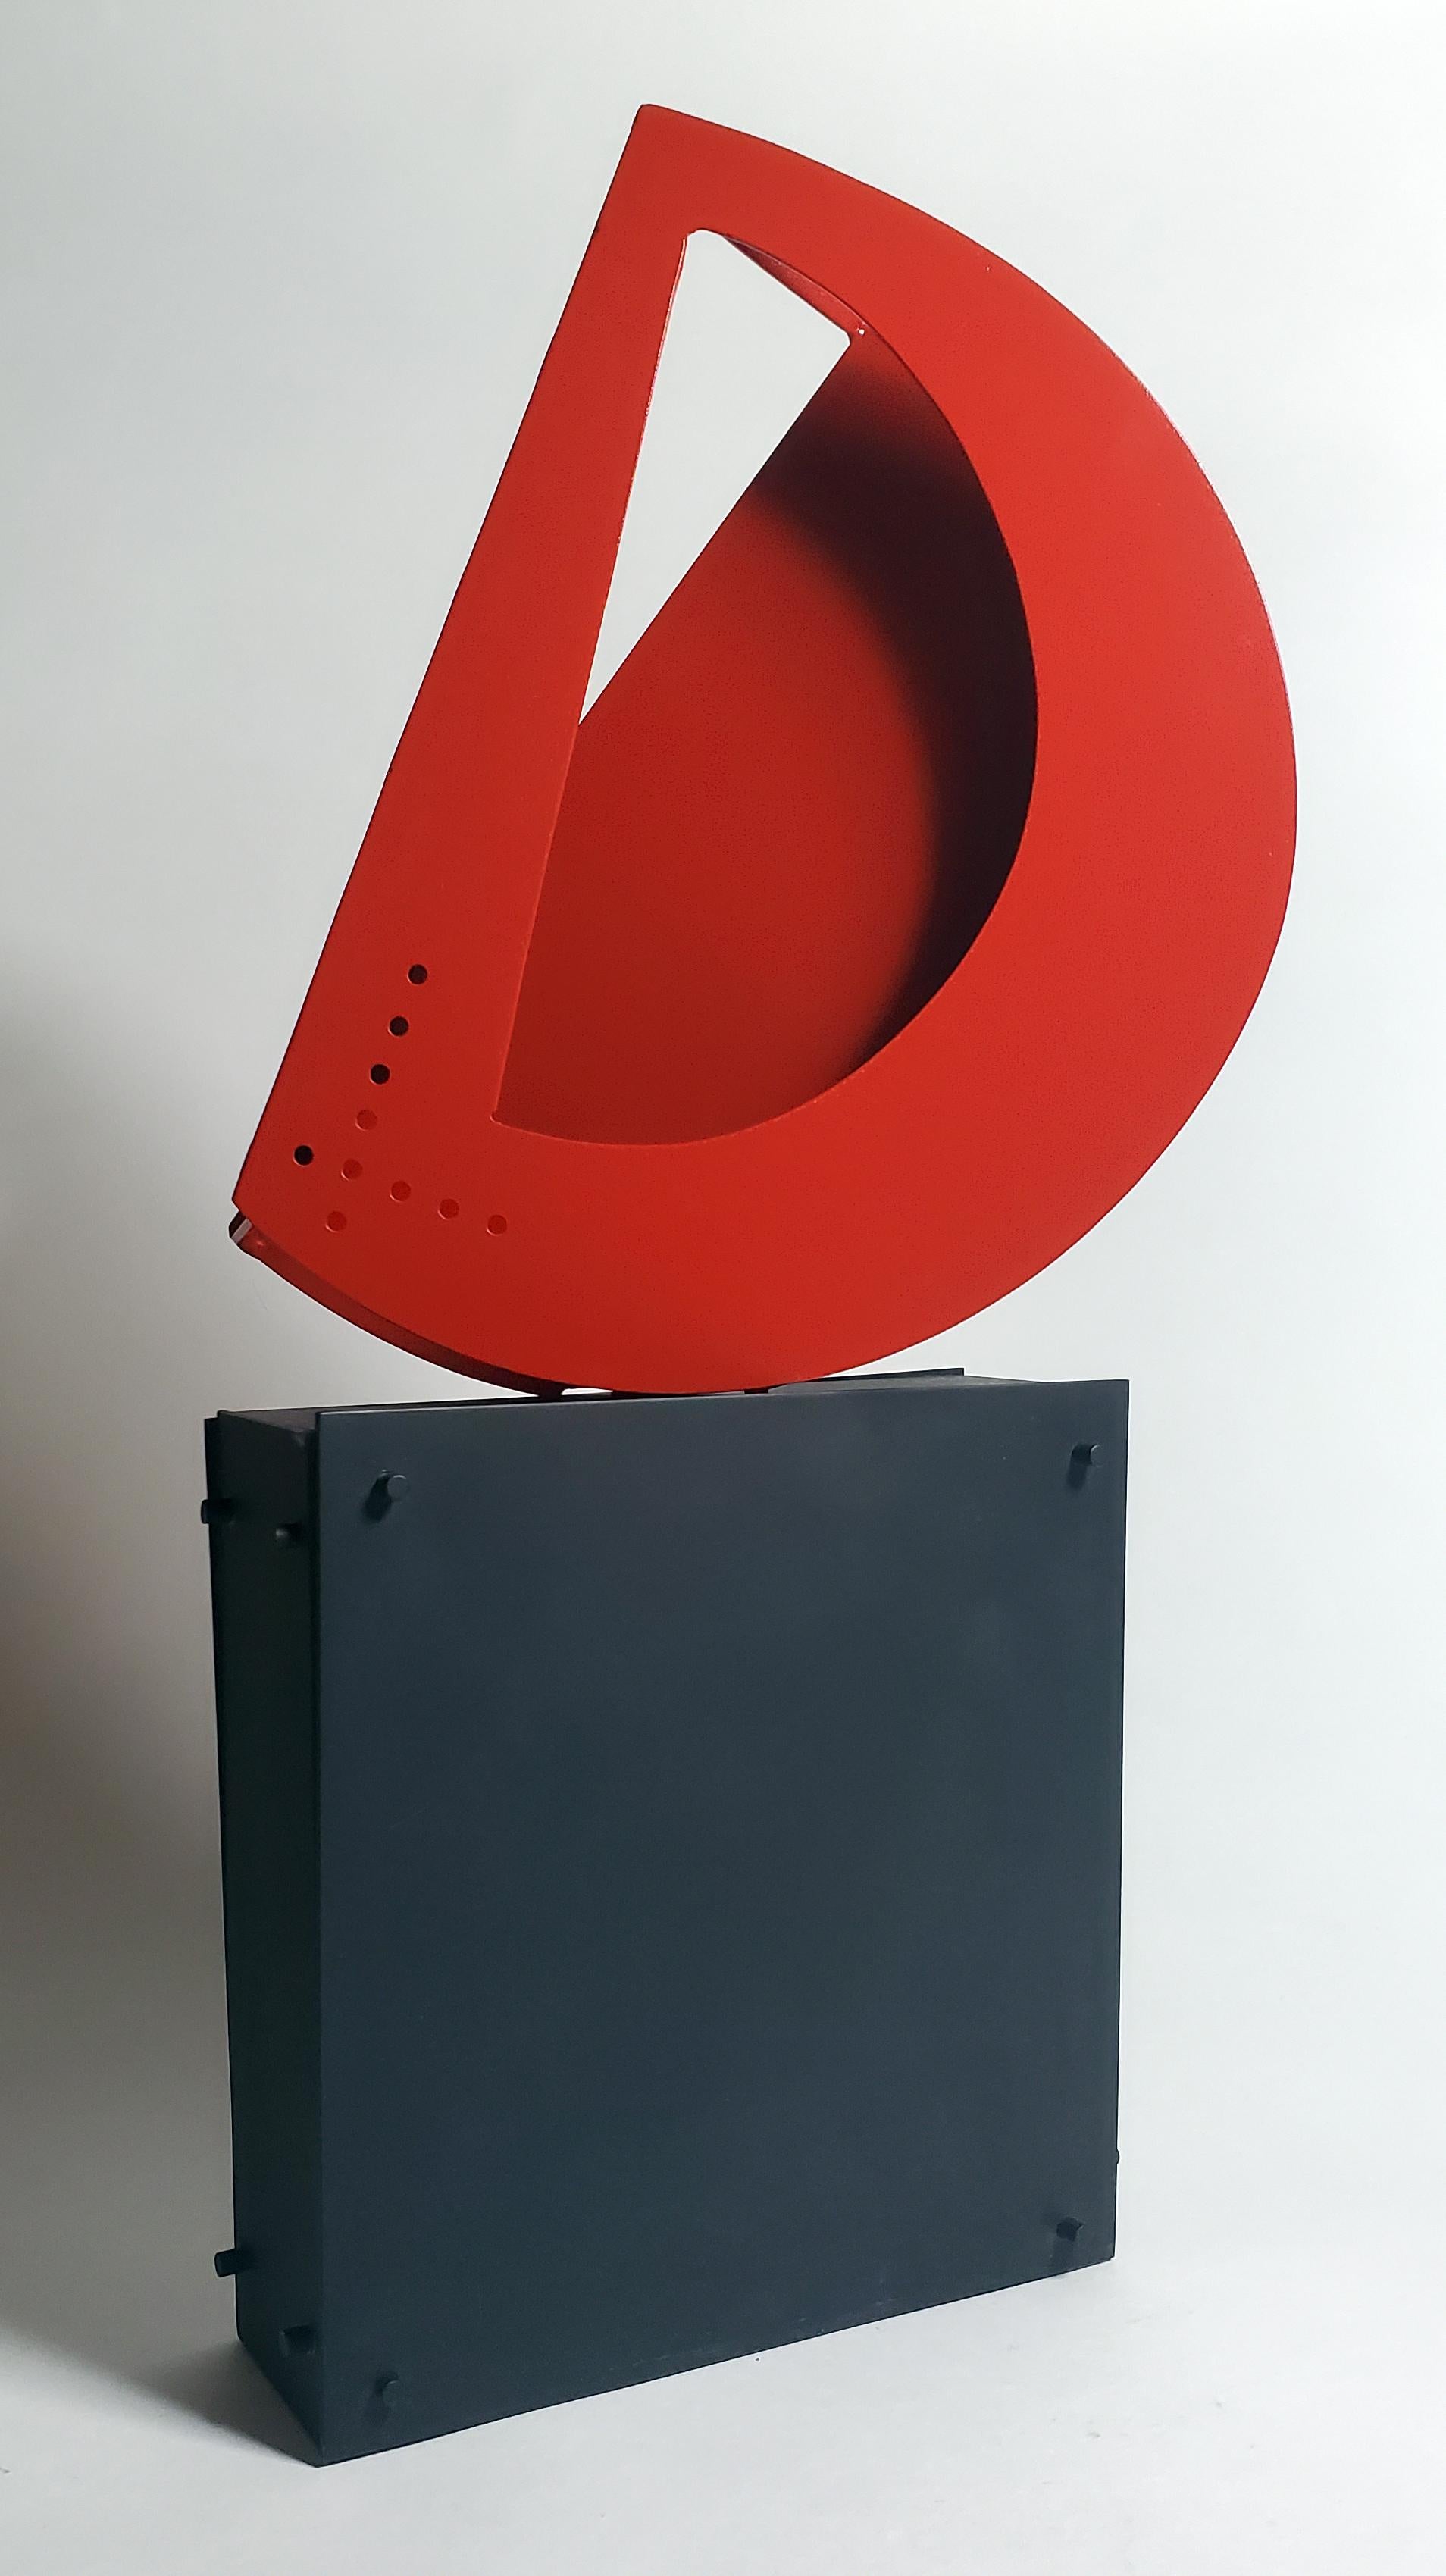 Sculpture rouge dynamique embrassant les principes du constructivisme, « Le nouveau D »